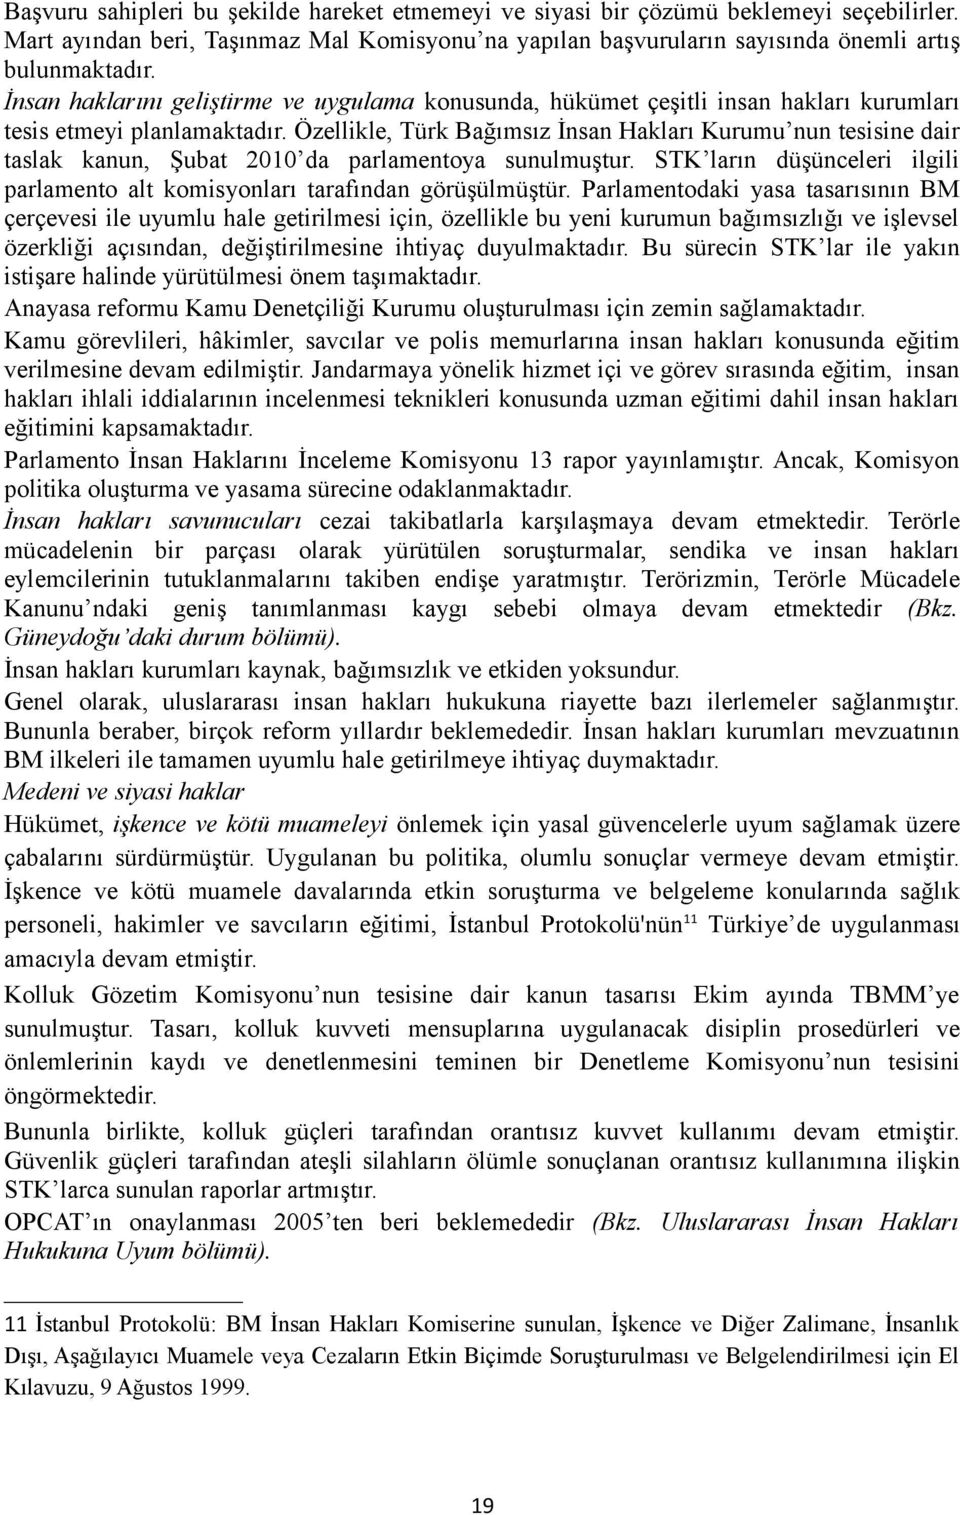 Özellikle, Türk Bağımsız İnsan Hakları Kurumu nun tesisine dair taslak kanun, Şubat 2010 da parlamentoya sunulmuştur. STK ların düşünceleri ilgili parlamento alt komisyonları tarafından görüşülmüştür.